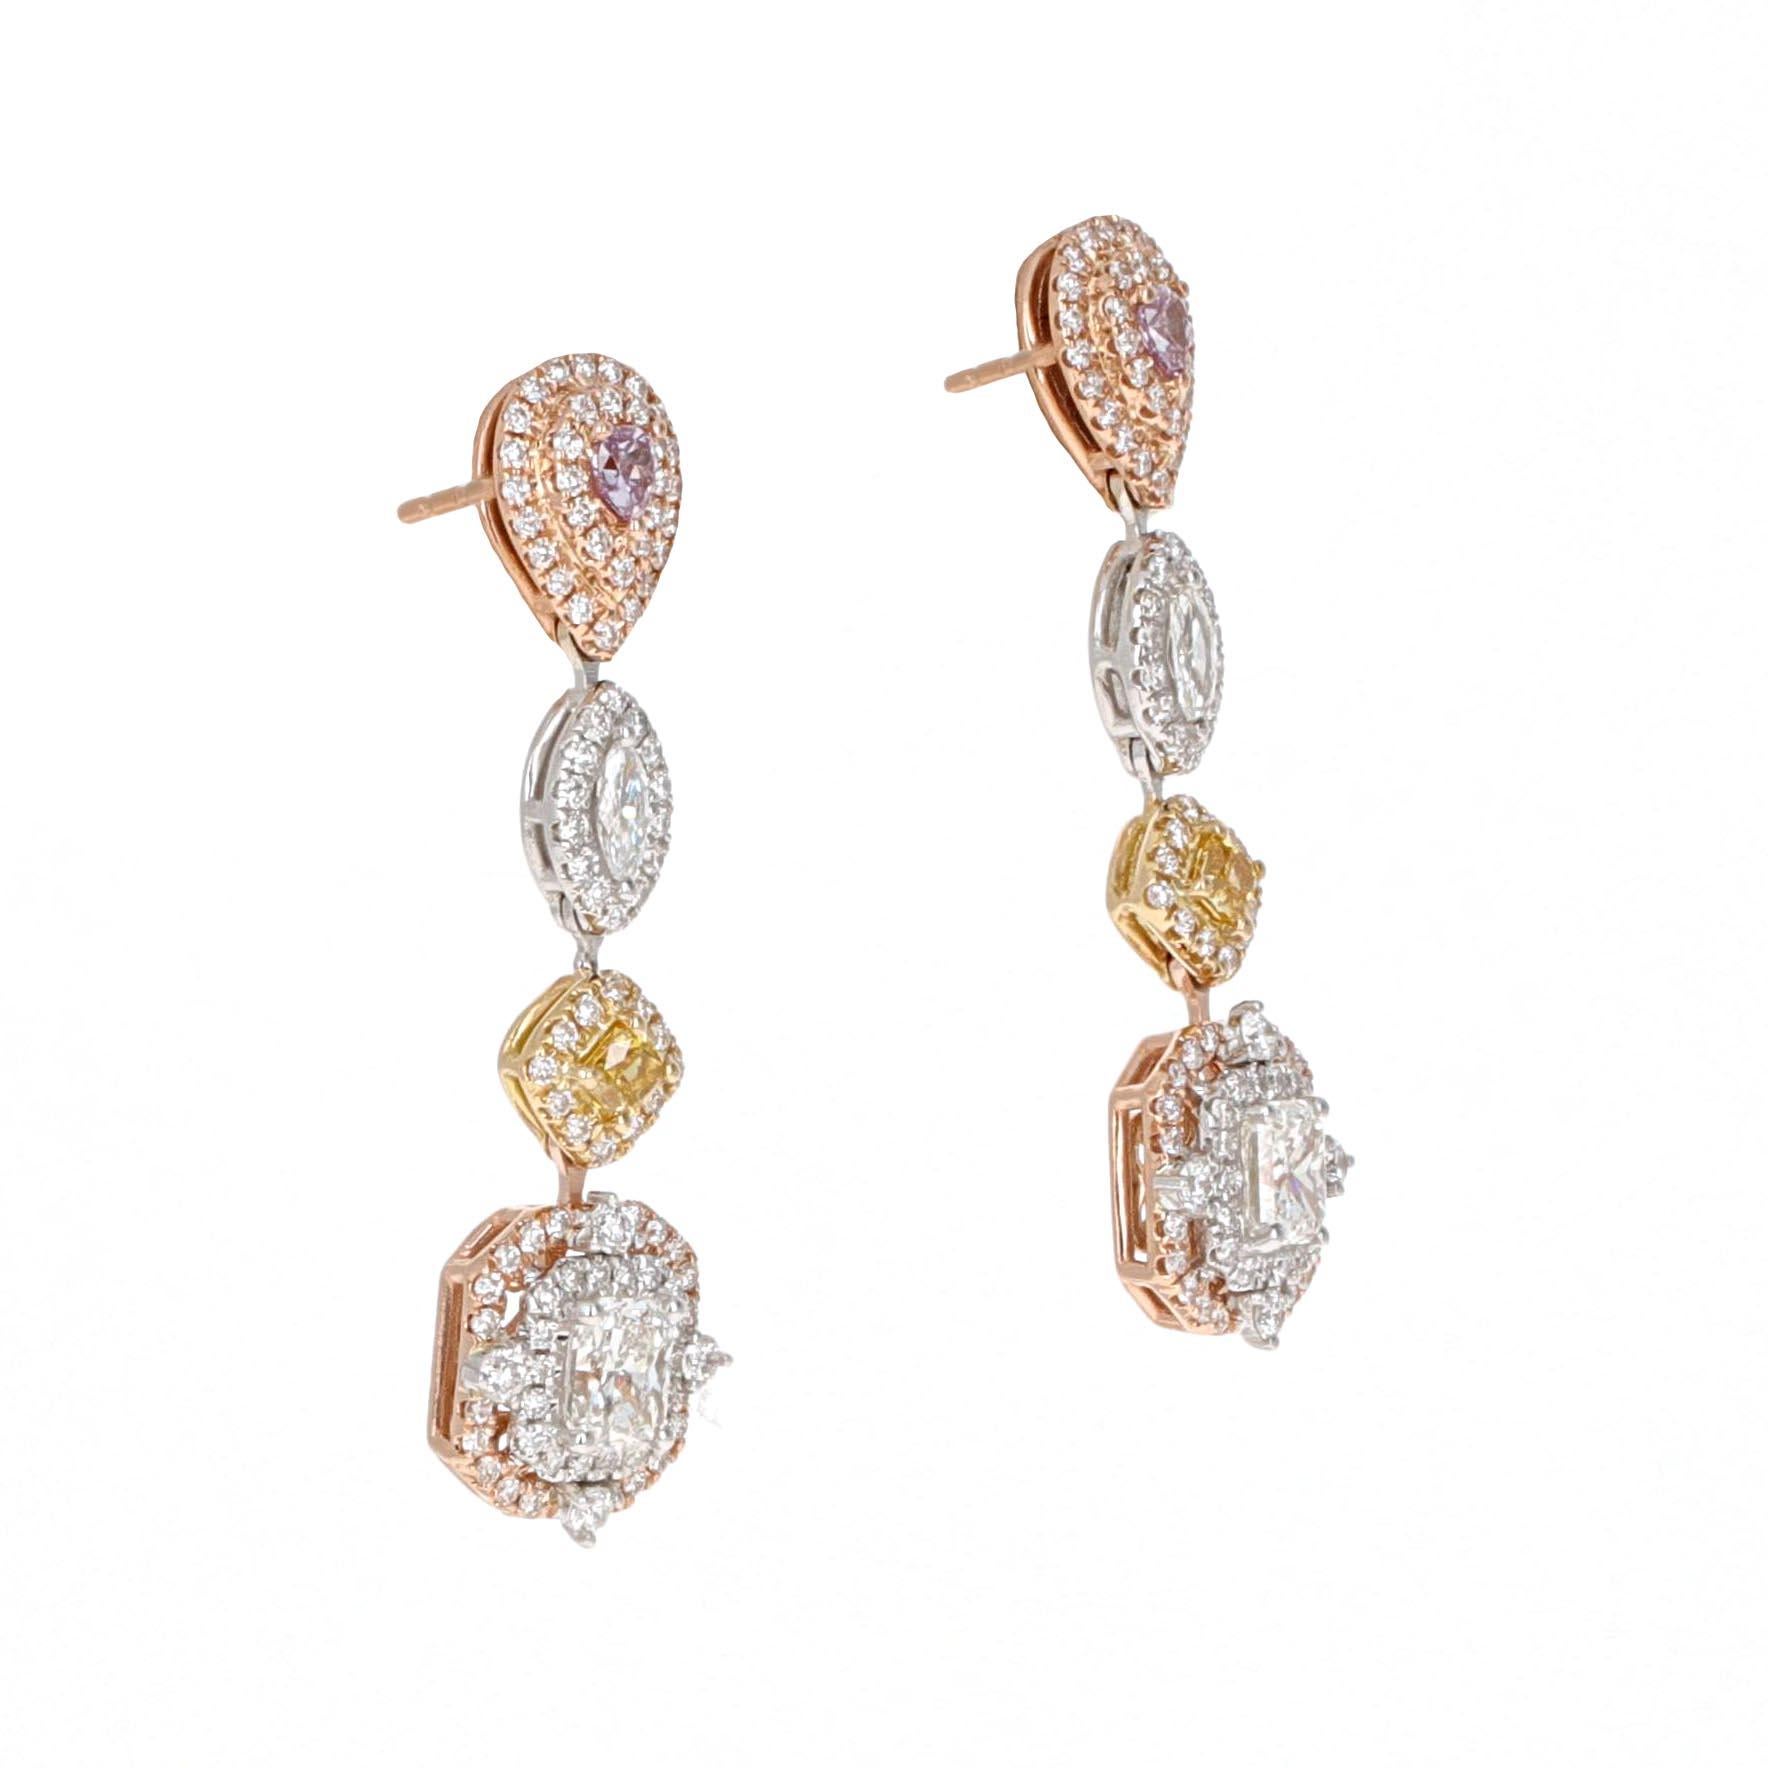 Round Cut 2.46 Carat, Fancy Colored Diamond and Fancy Shape Diamond Dangle Earrings